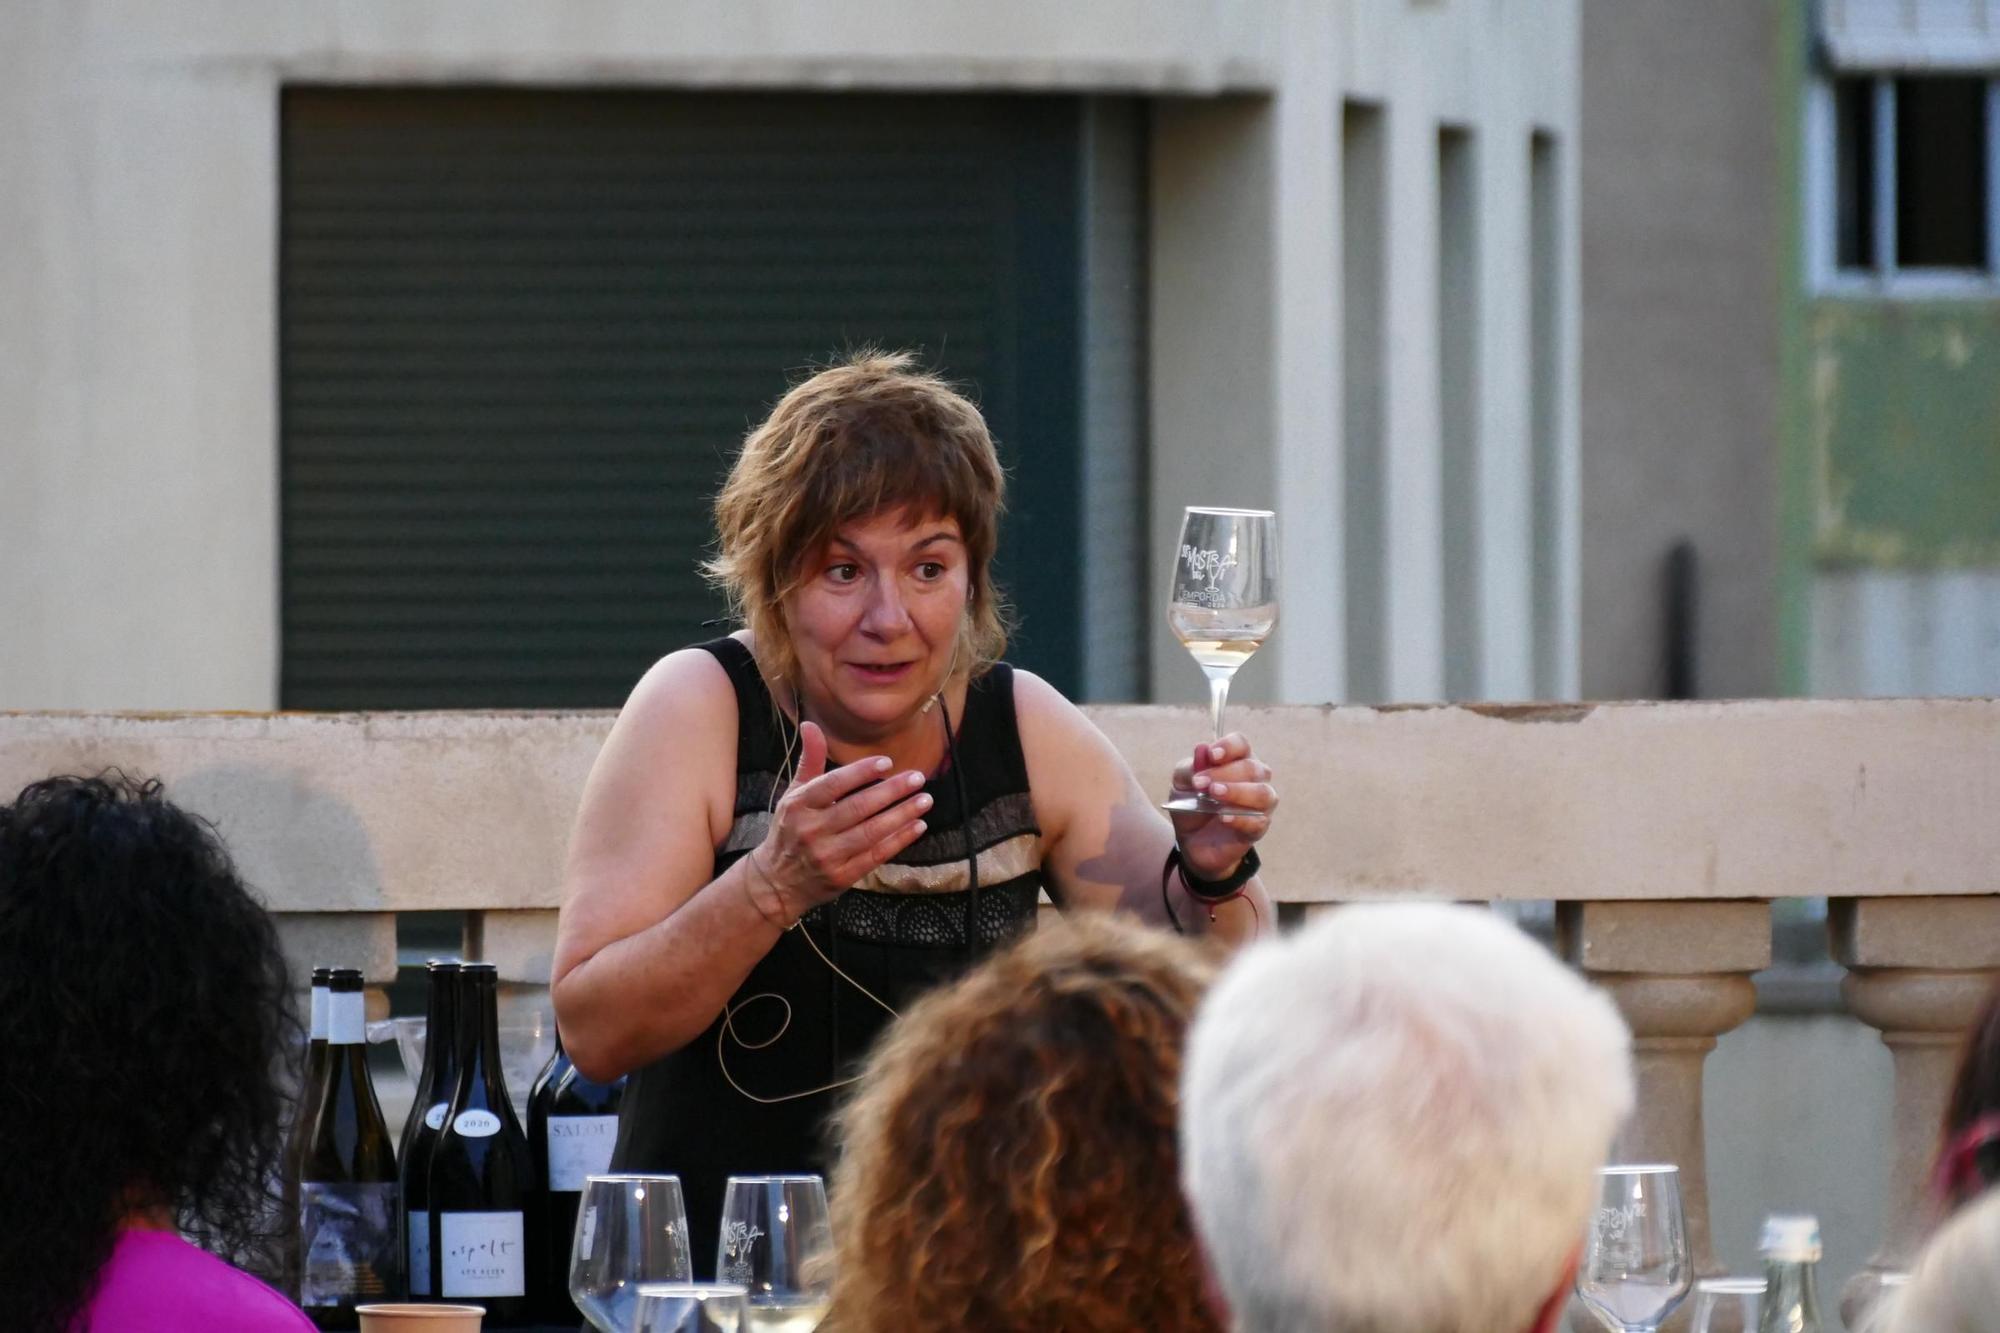 La 38a Mostra del Vi de l’Empordà de Figueres s’inaugura amb el pregó d’Empar Moliner